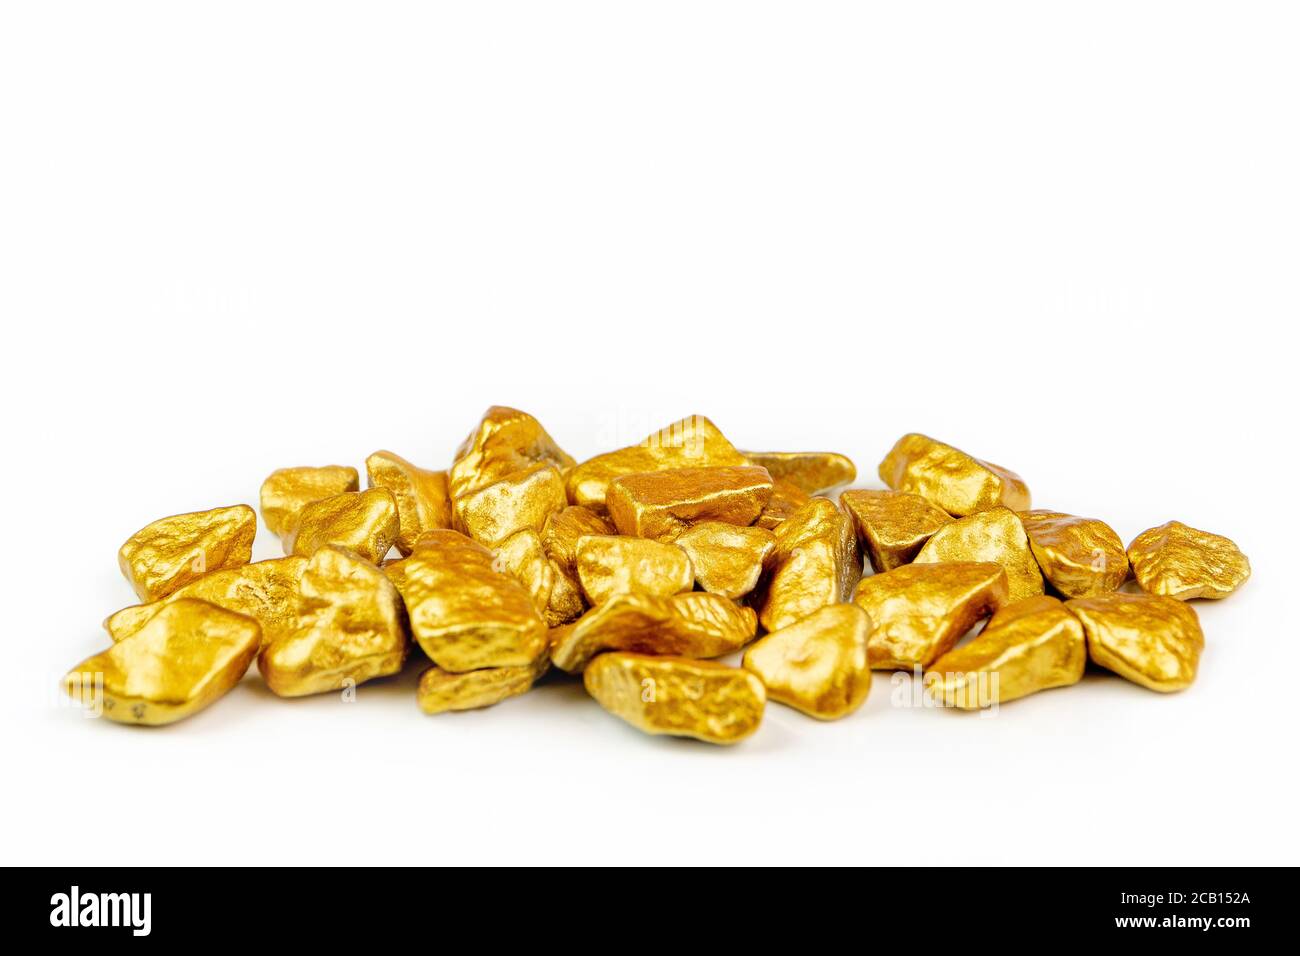 vue sur un tas de nuggets dorés, minerai doré sur fond blanc isolé avec beaucoup d'espace de copie Banque D'Images